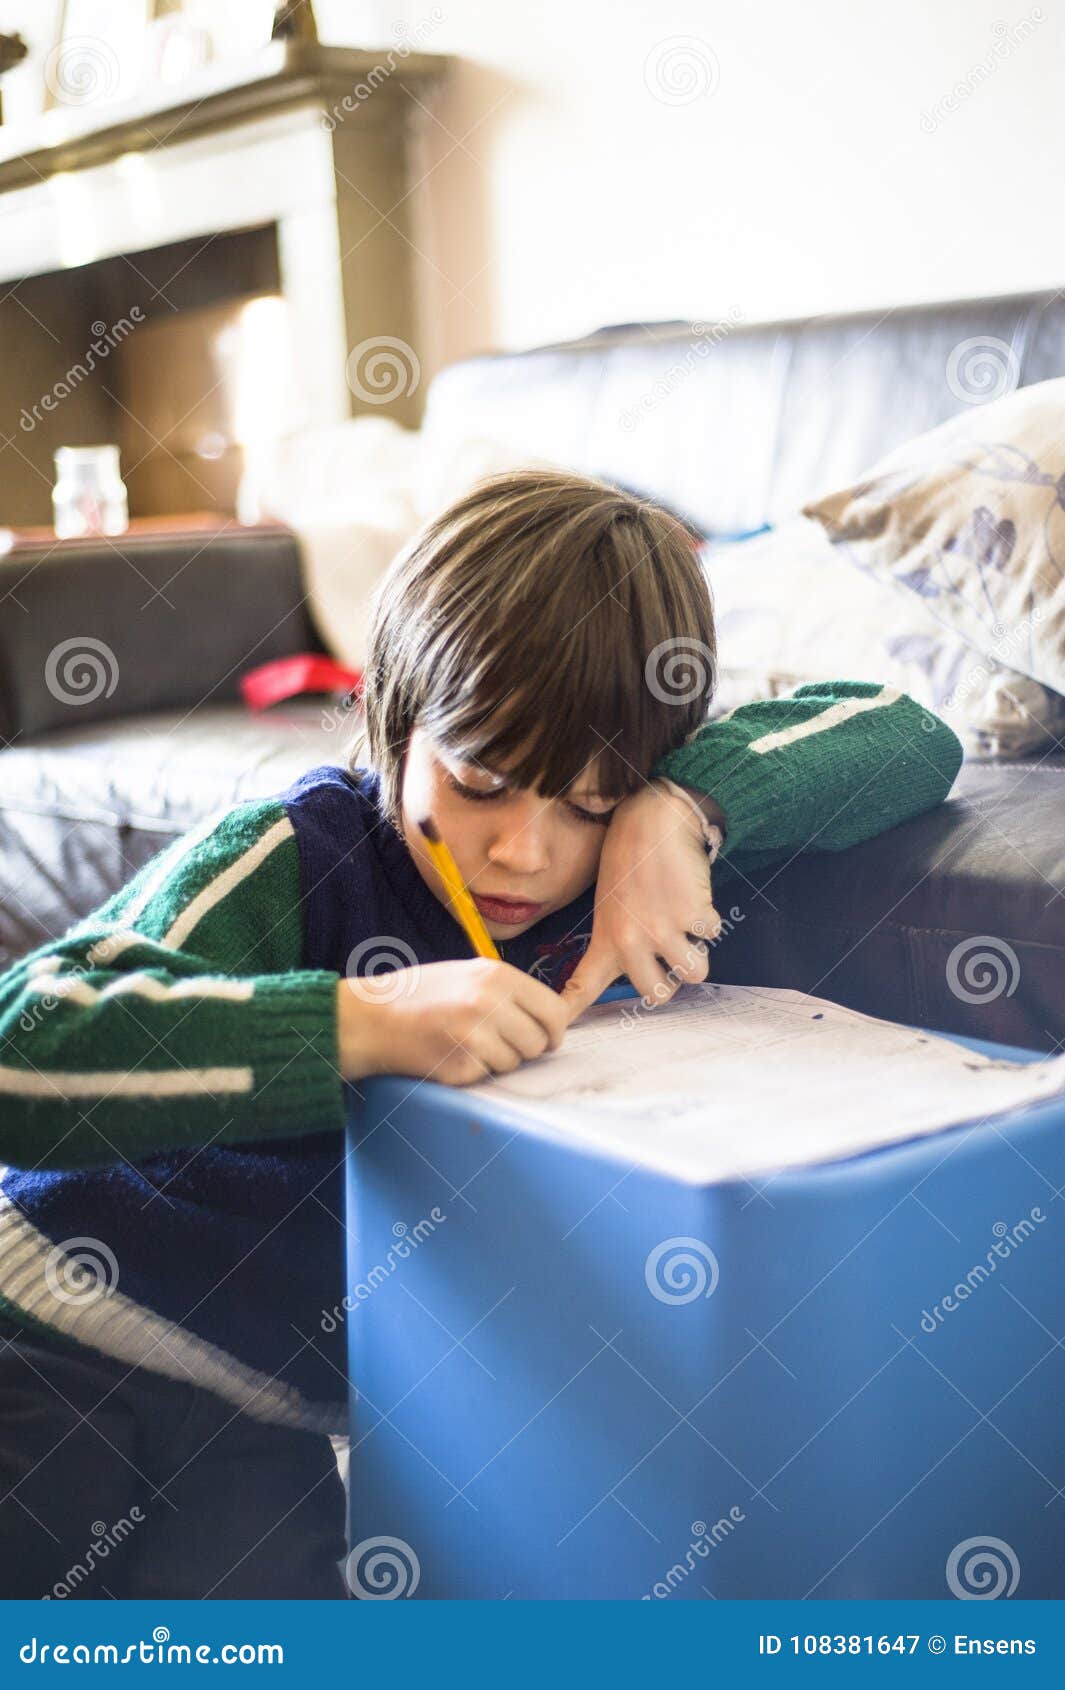 6 Year Old Child Writes Stock Image Image Of Learning 108381647